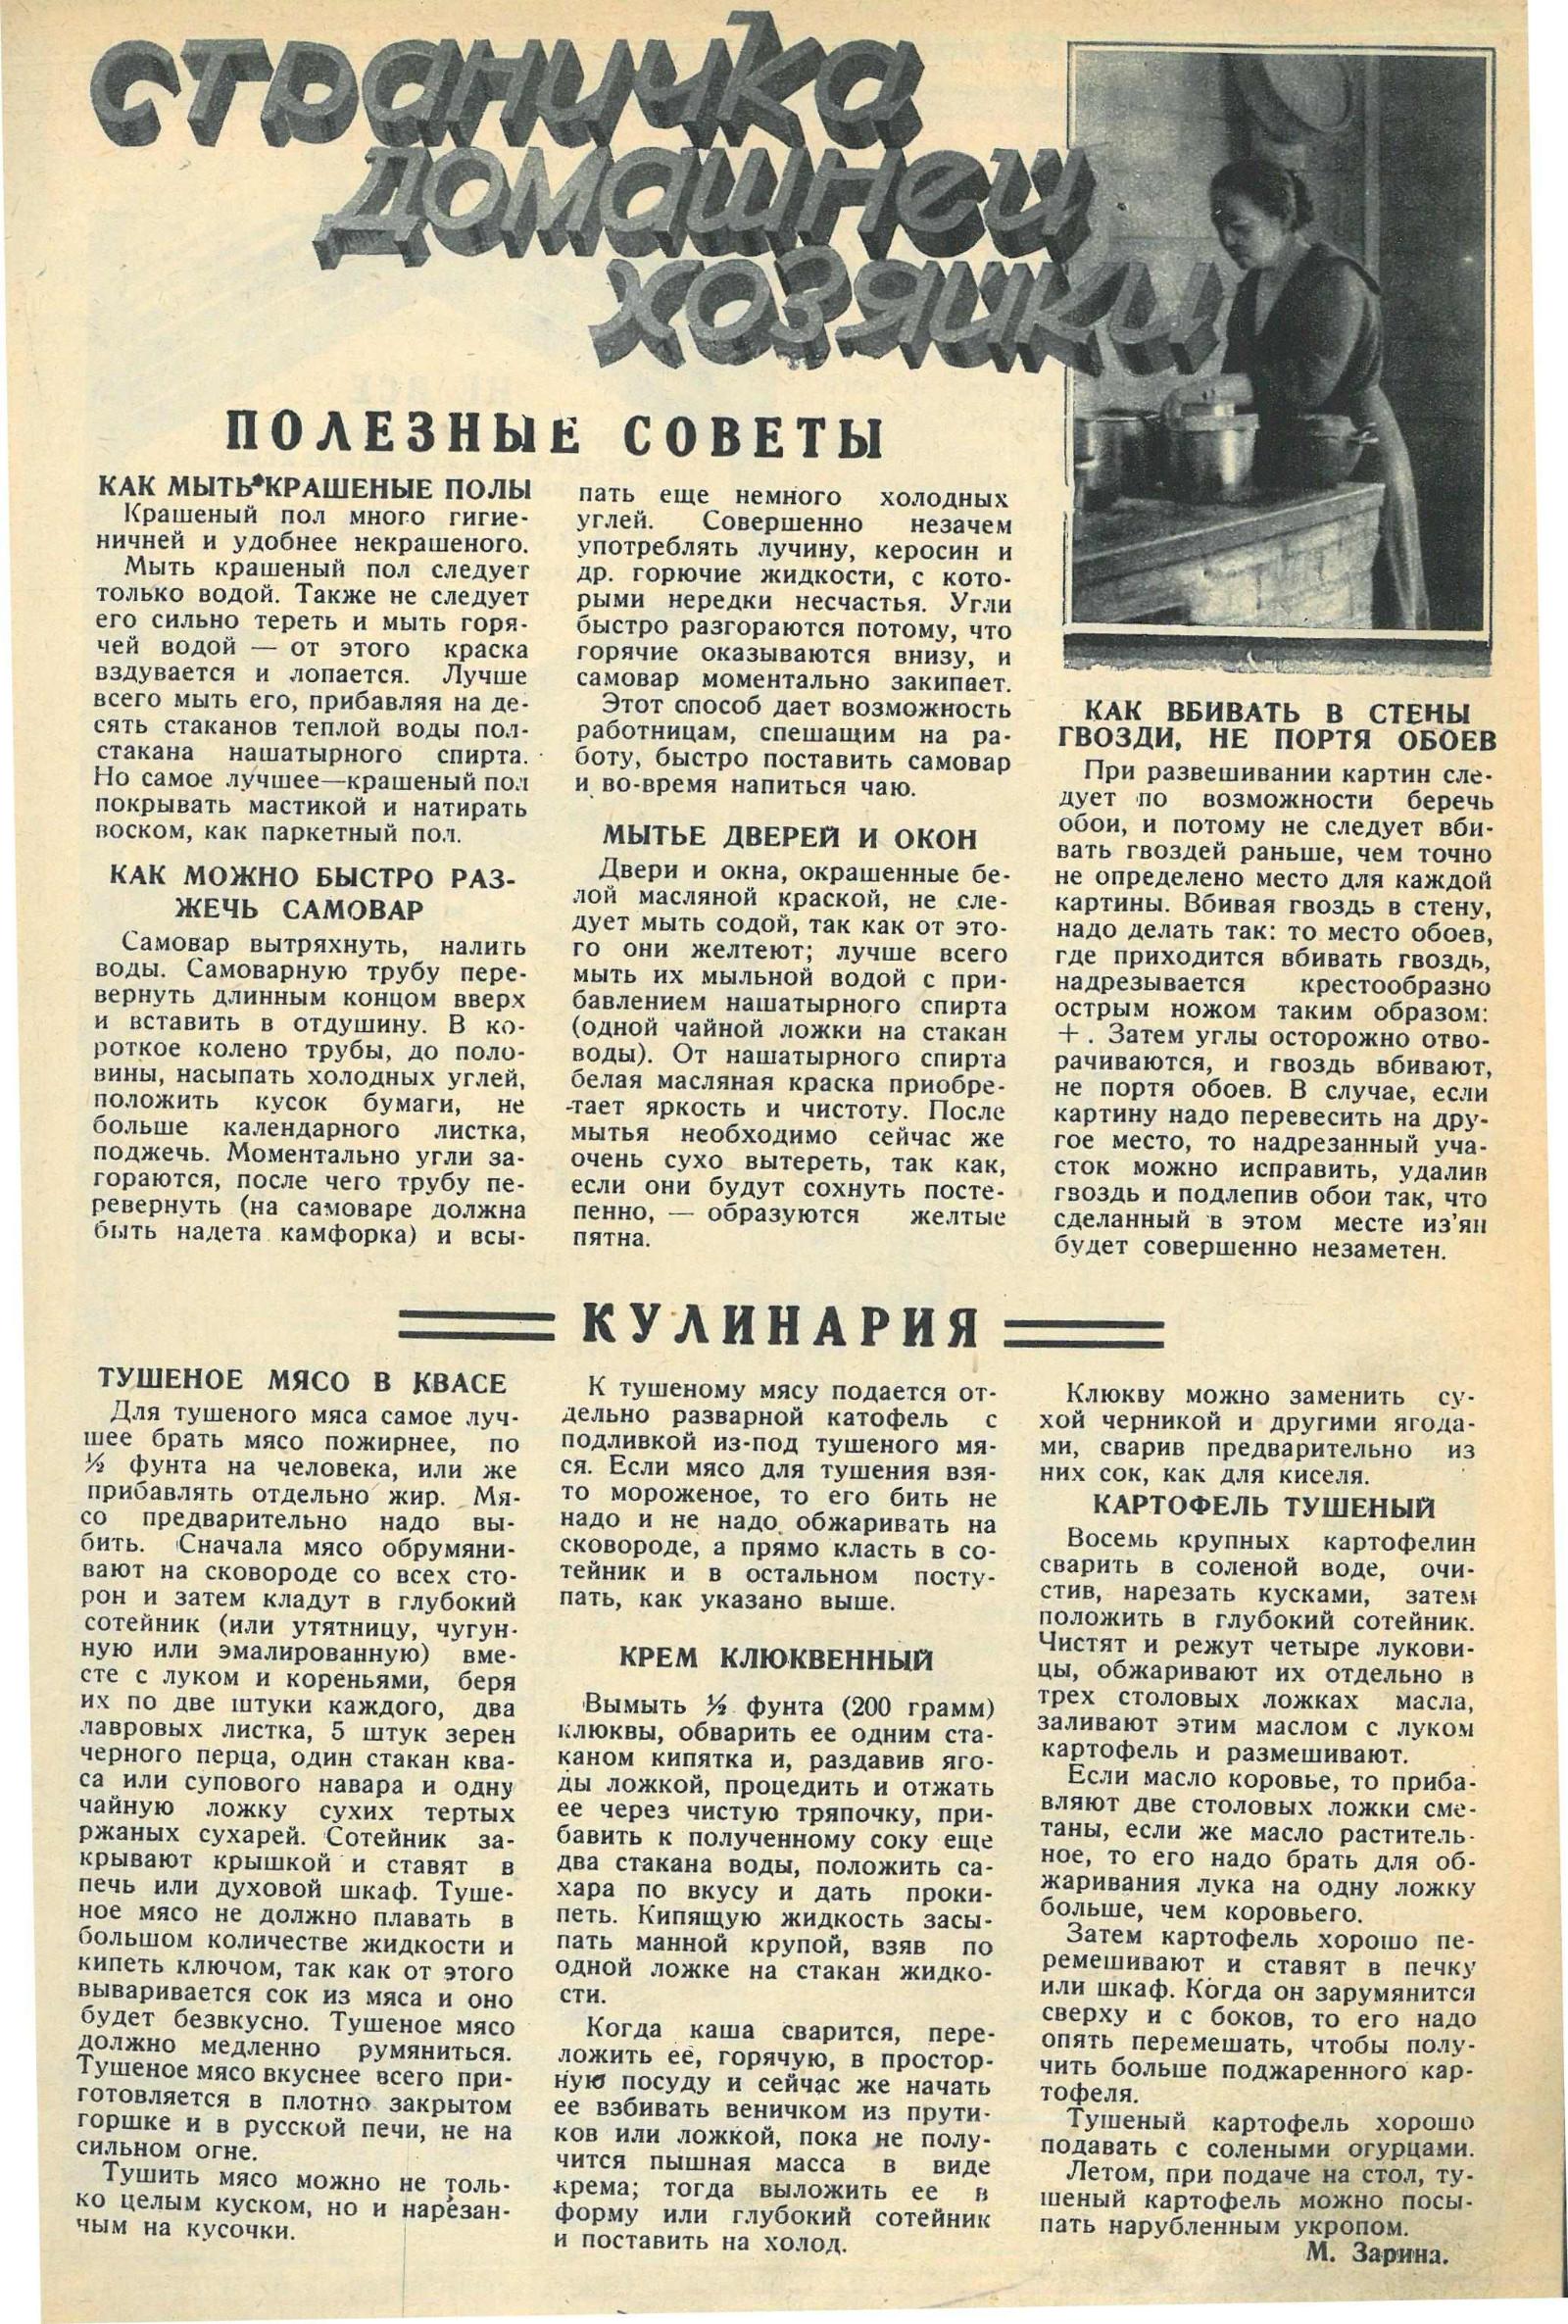 Рецепты Марии Зариной из журнала «Работница». 1928 год.